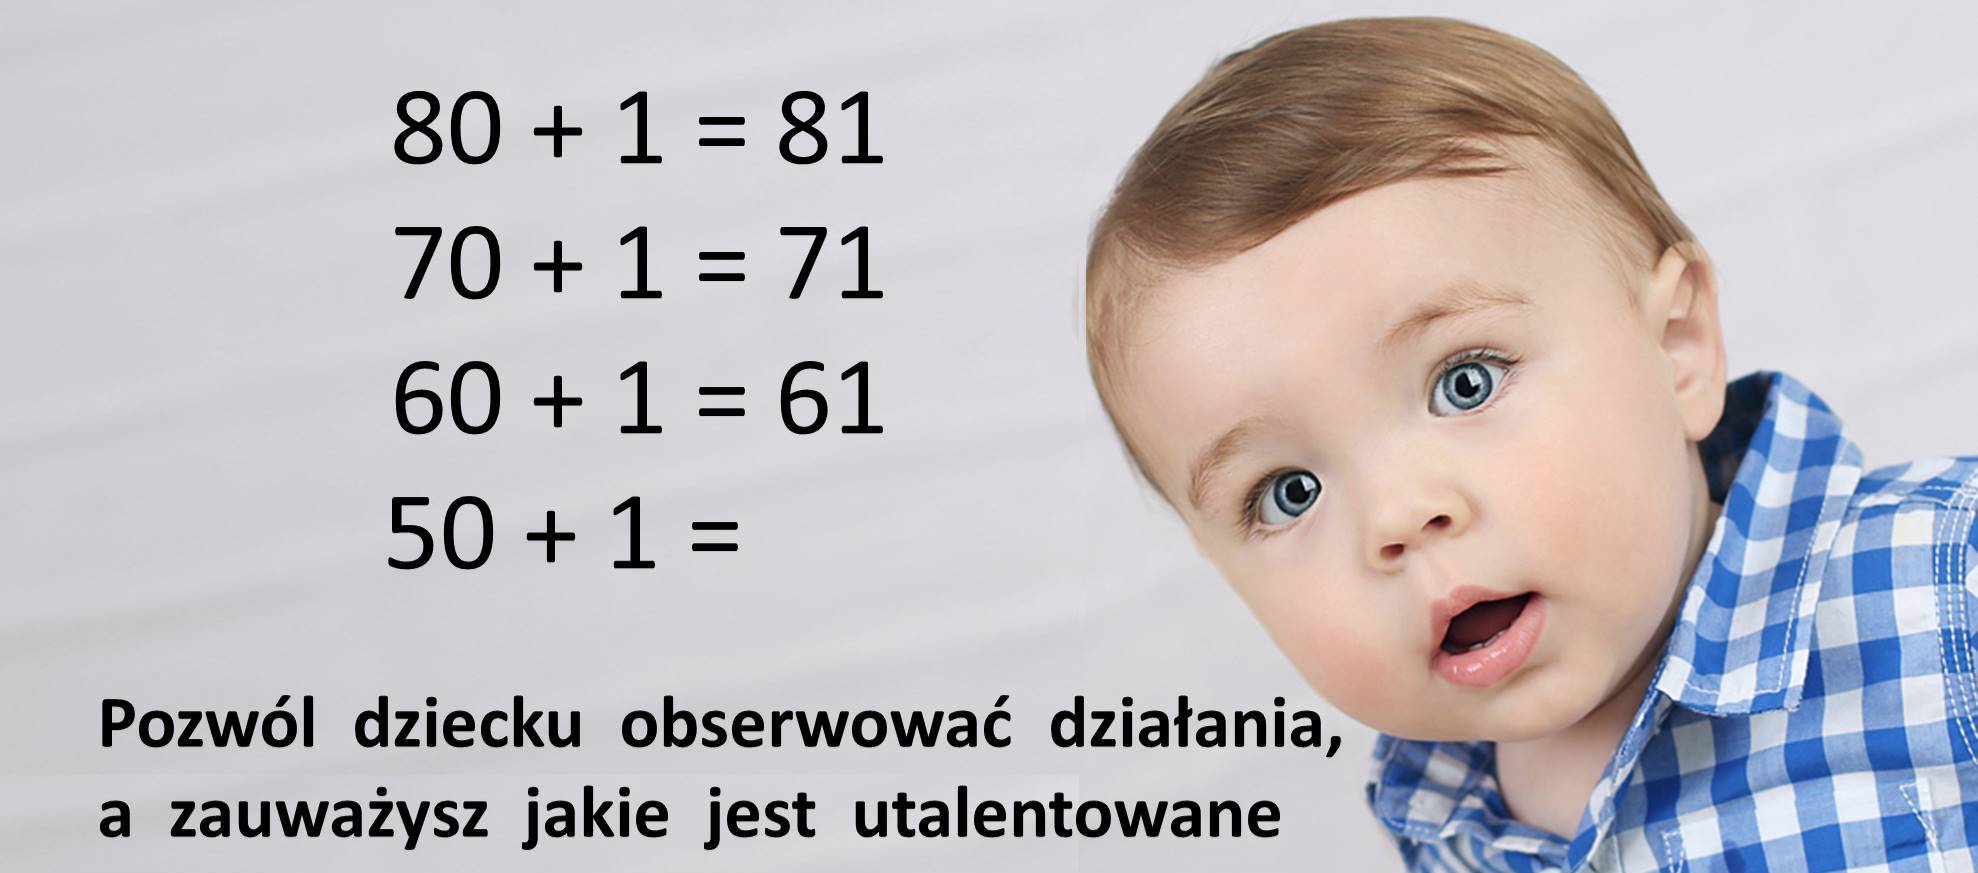 Matematyka dla rozwoju dziecka w wieku 0-6 lat